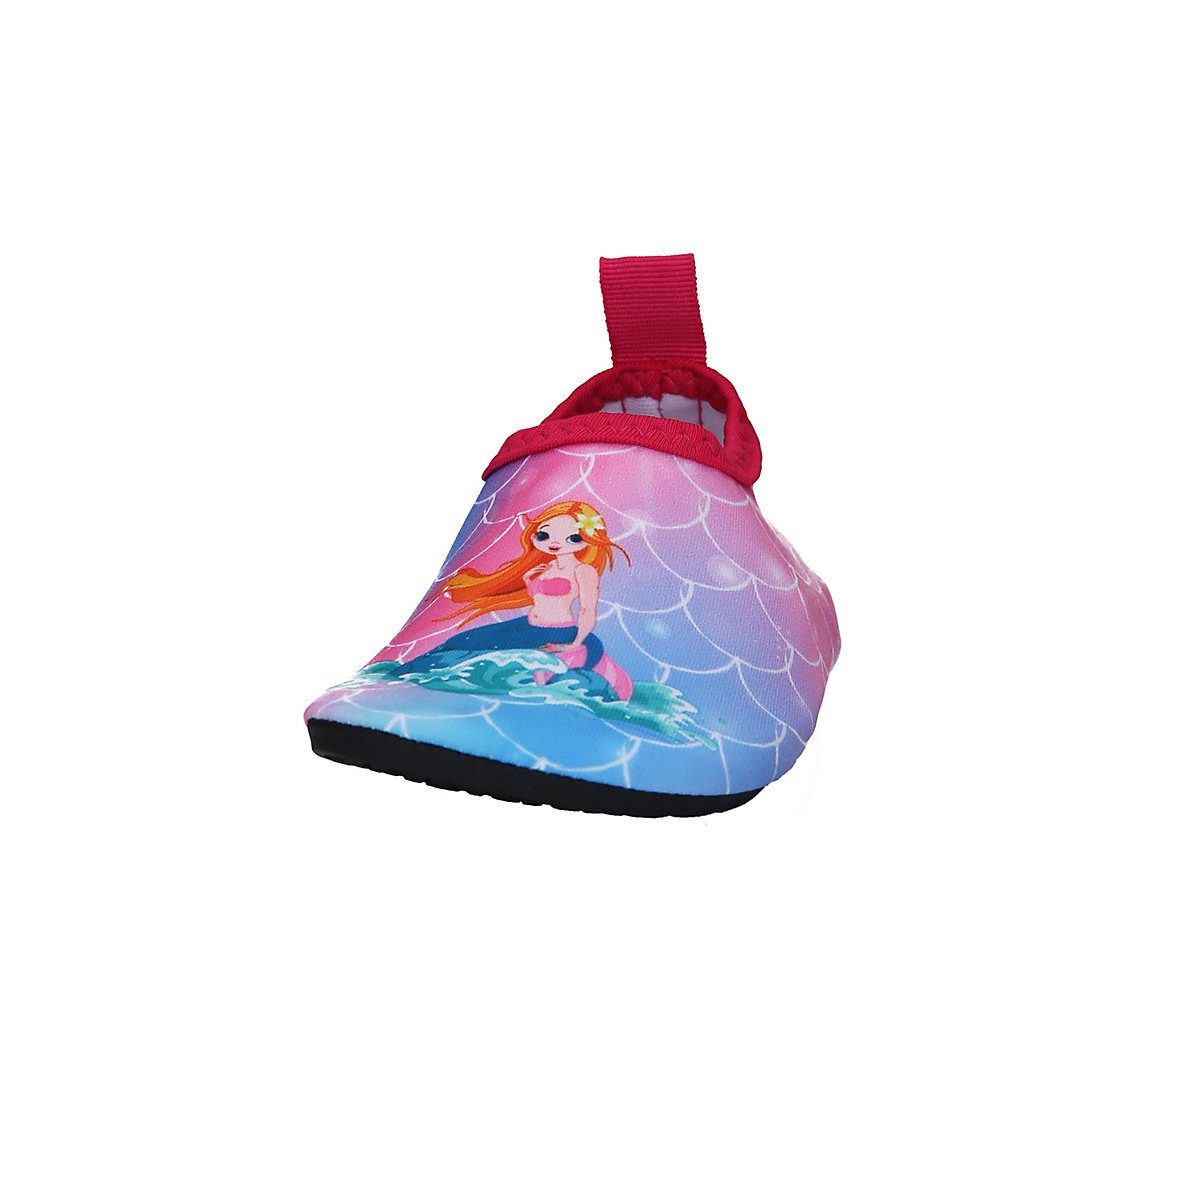 Playshoes Badeschuhe Wasserschuhe Schwimmschuhe, Barfuß-Schuh Passform, rosa mit Sohle flexible Motiv Badeschuh rutschhemmender Meerjungfrau